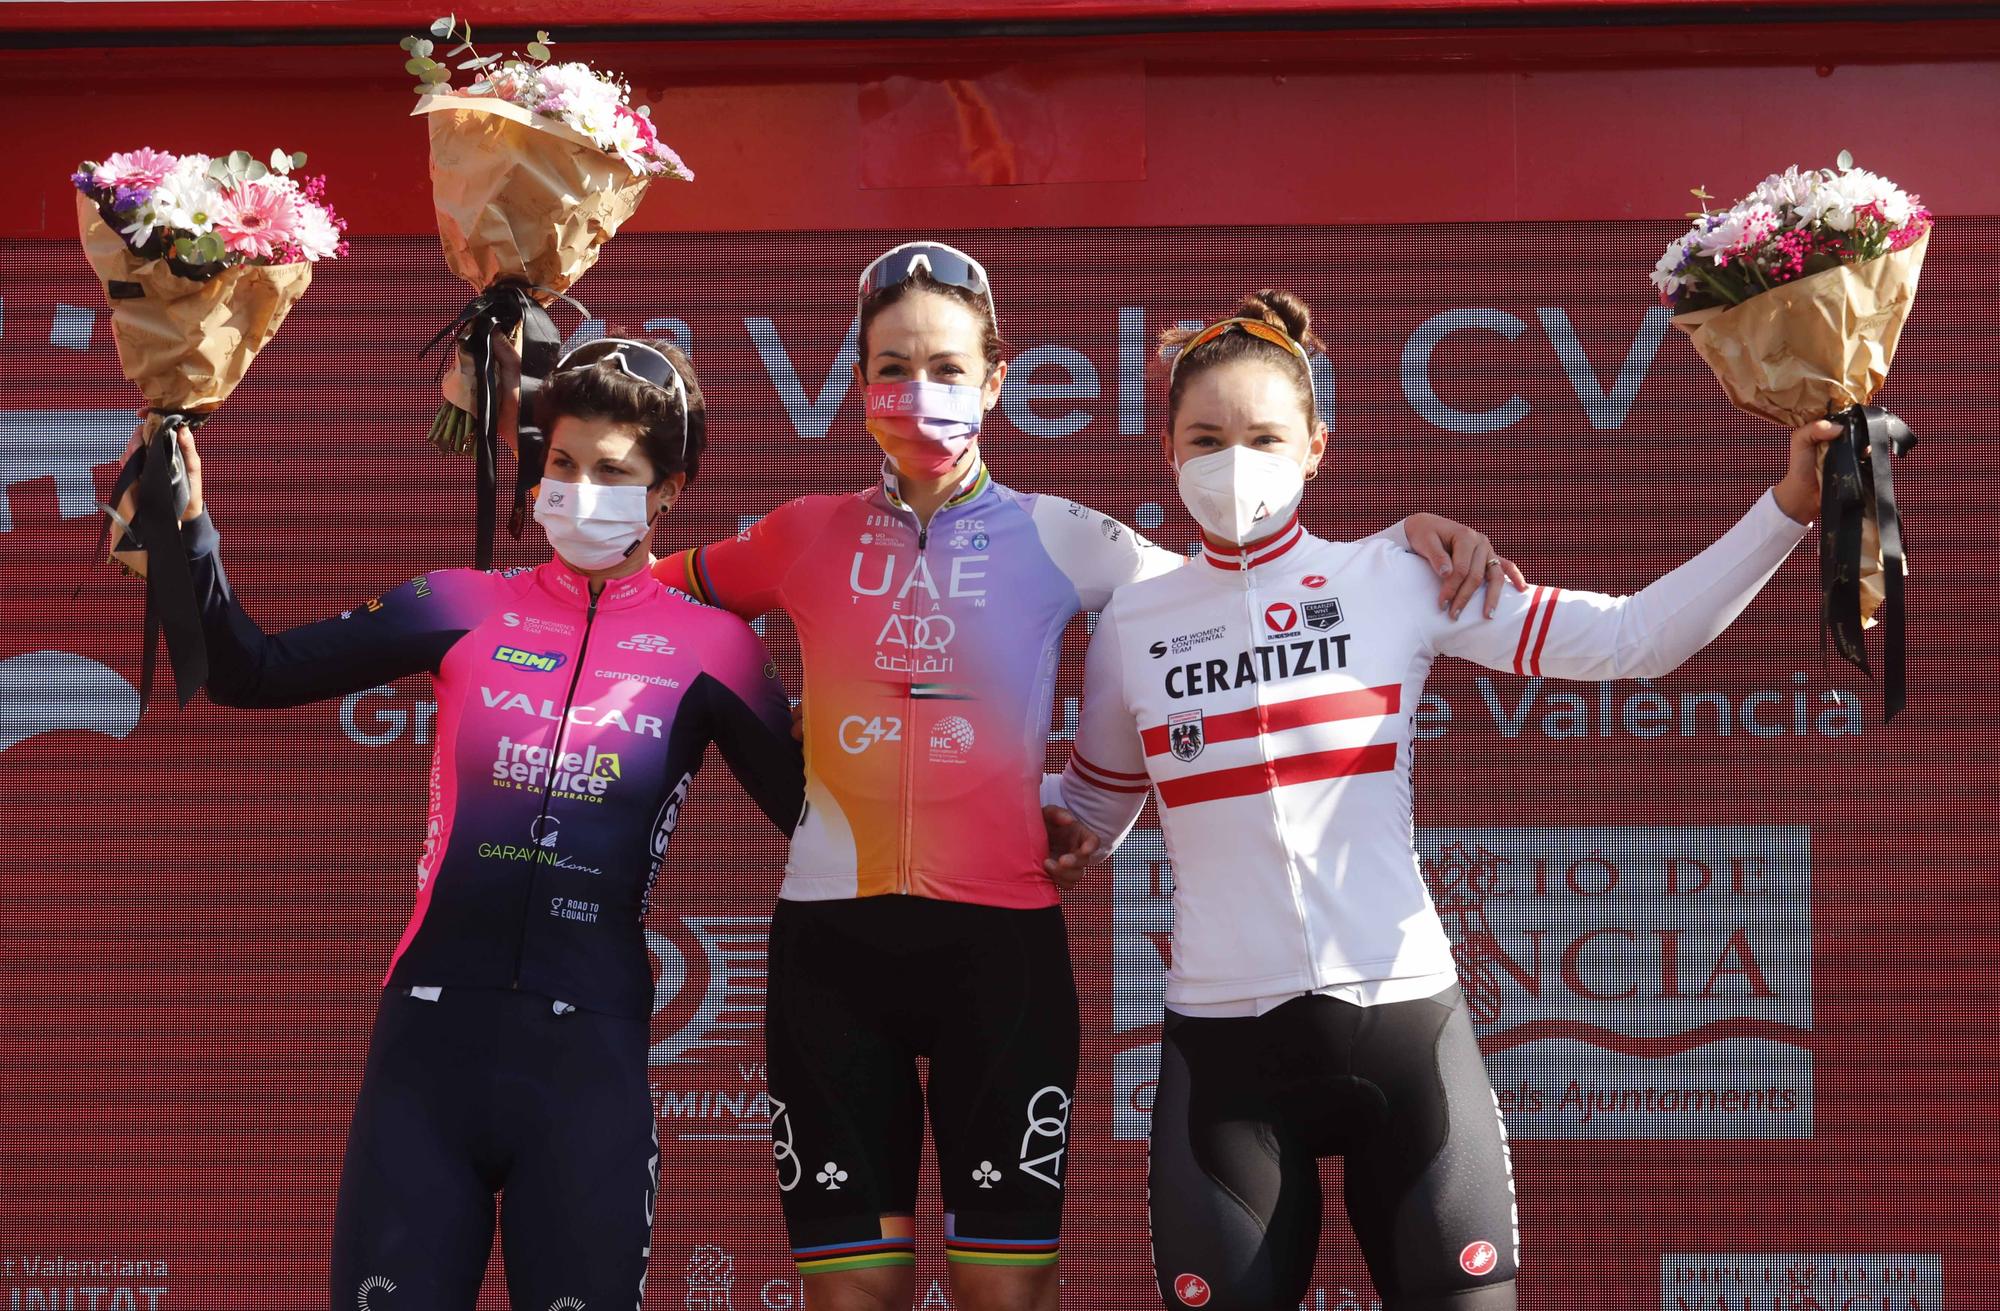 Final VCV Féminas - Volta Ciclista a la Comunitat Valenciana